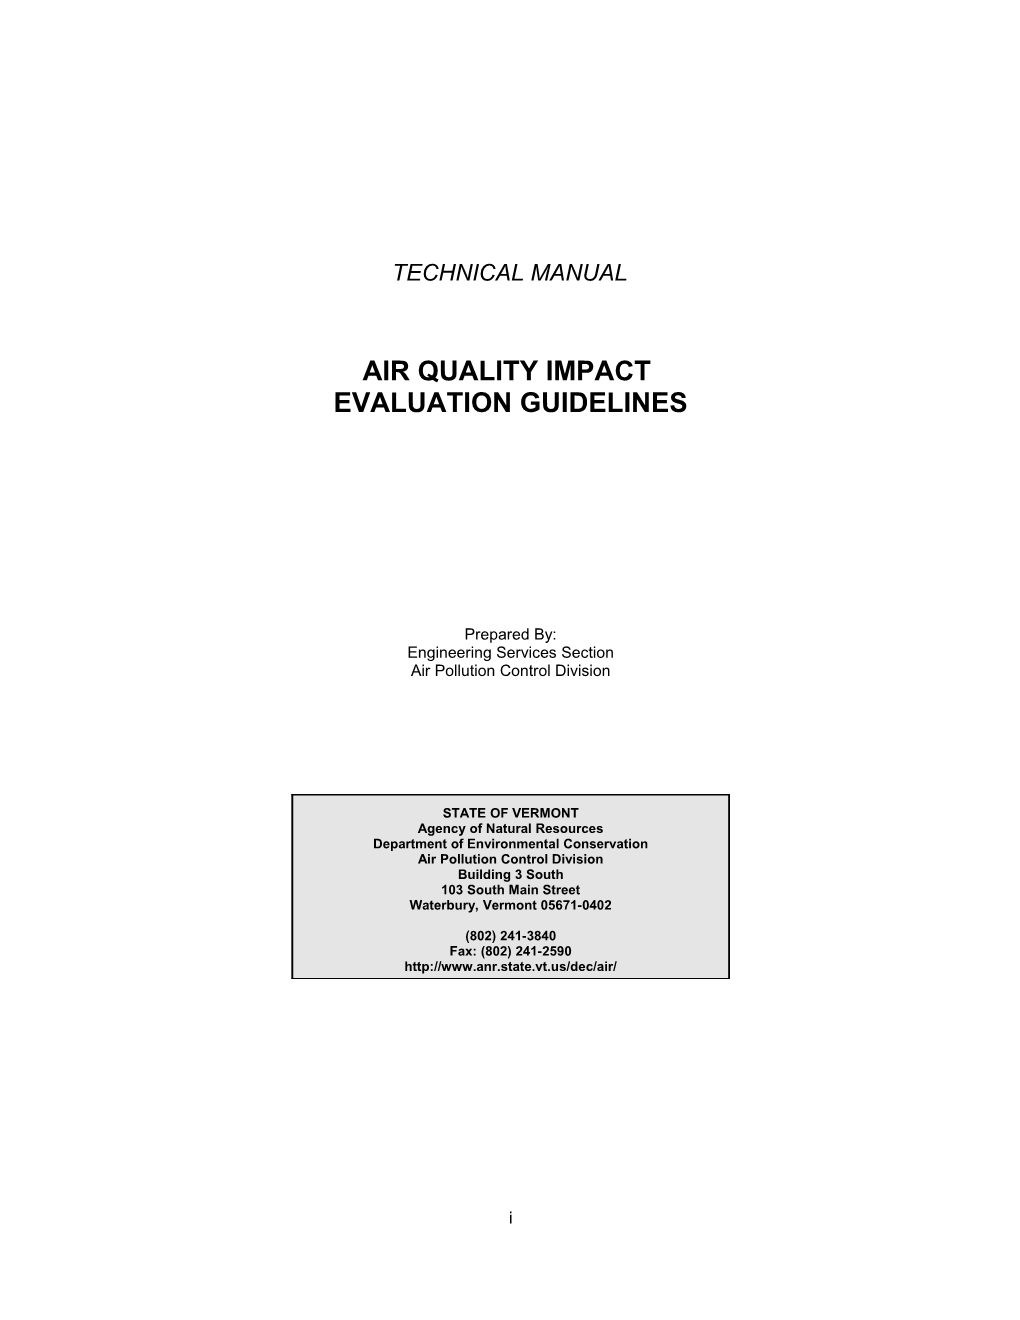 Air Quality Impact